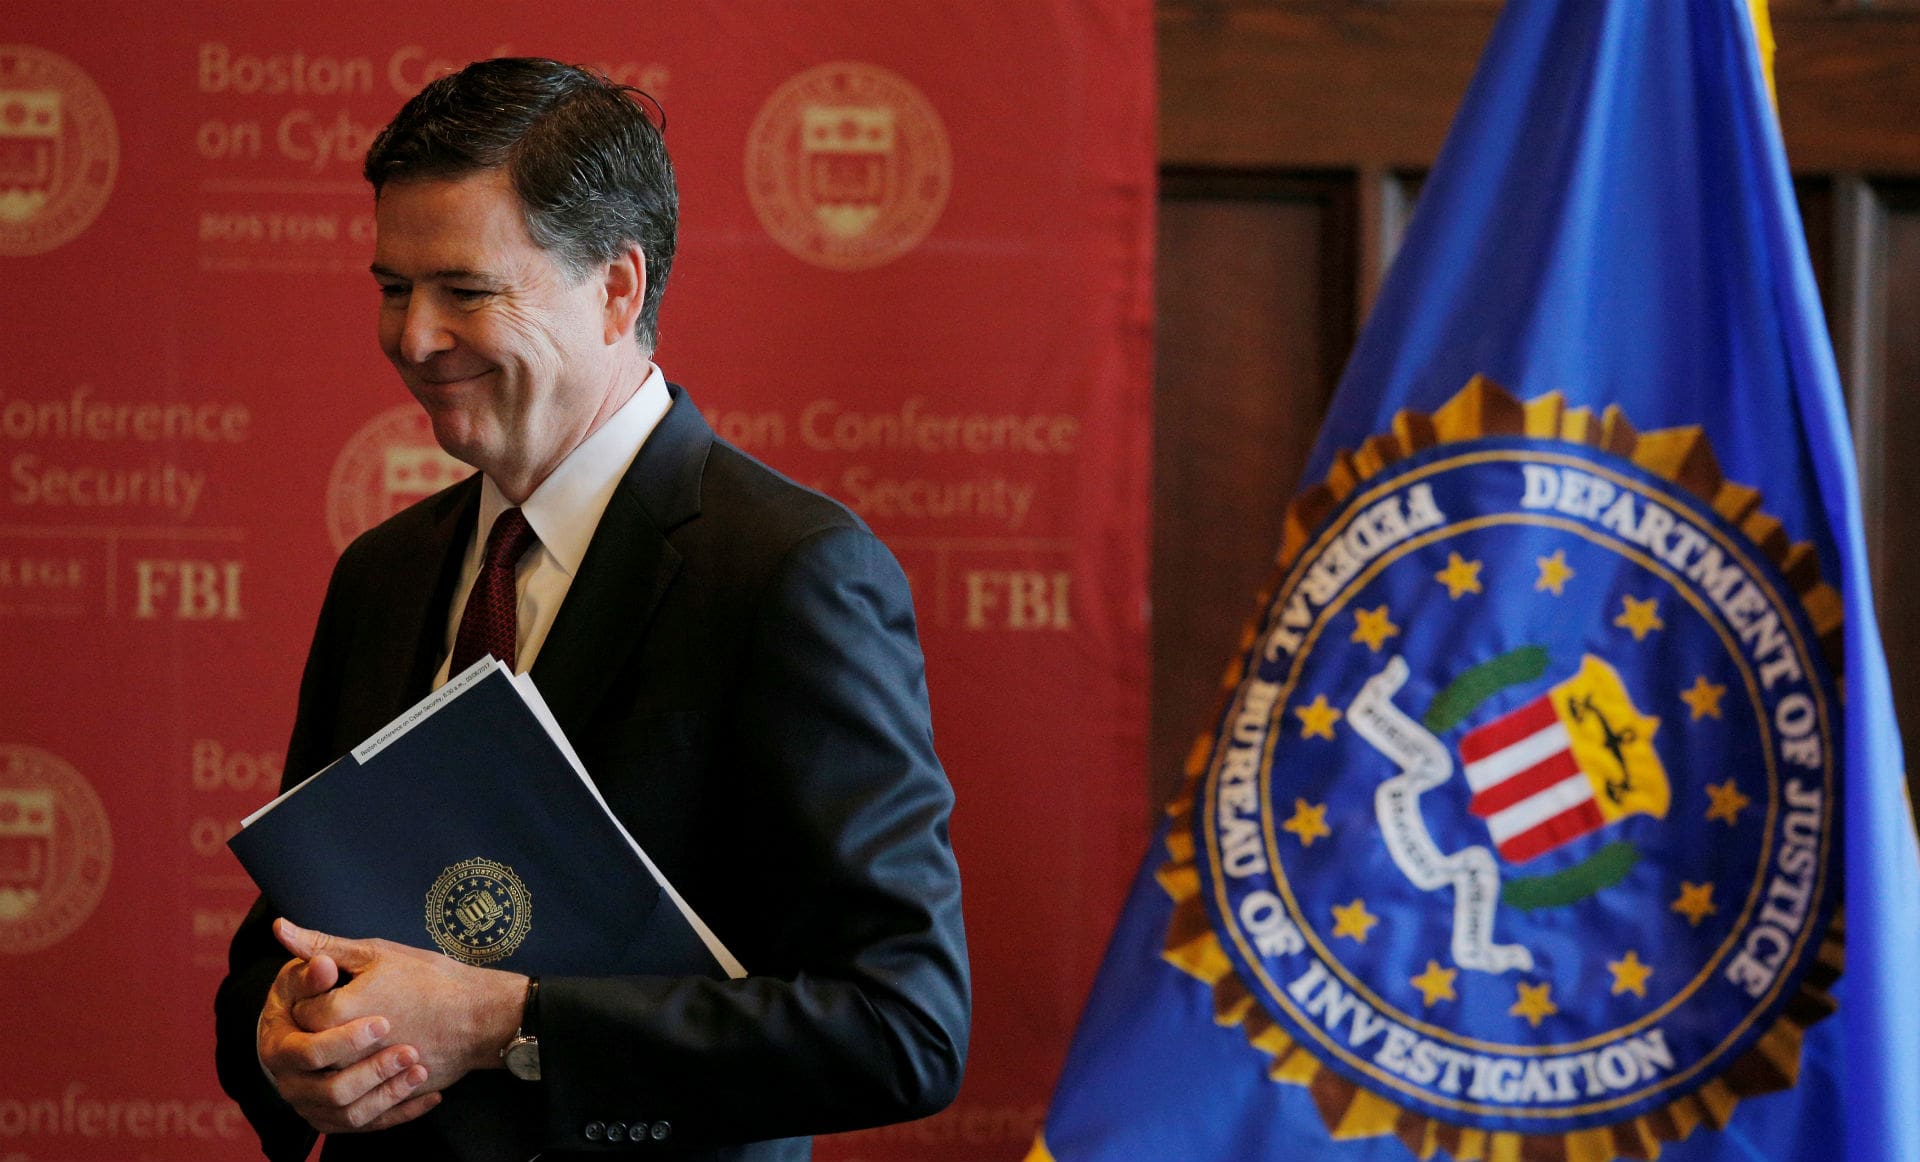 El FBI recalca que en Estados Unidos no existe "la privacidad absoluta"